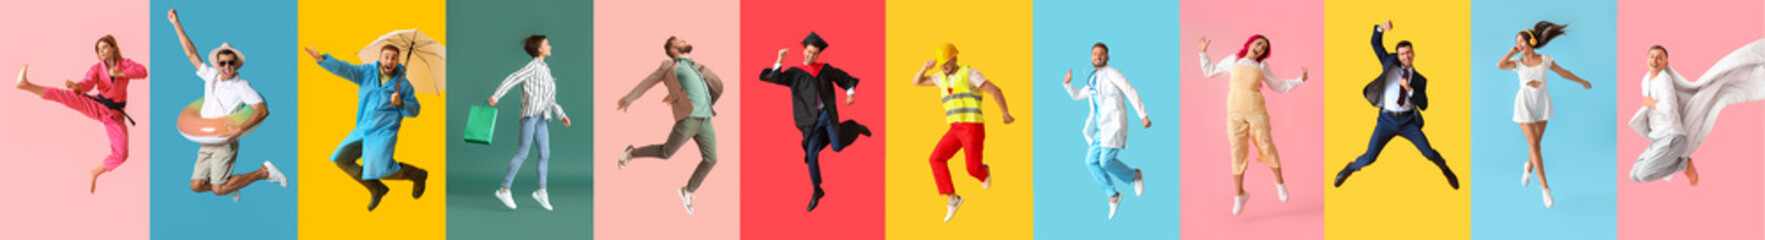 Collage van springende jonge mensen op gekleurde achtergrond